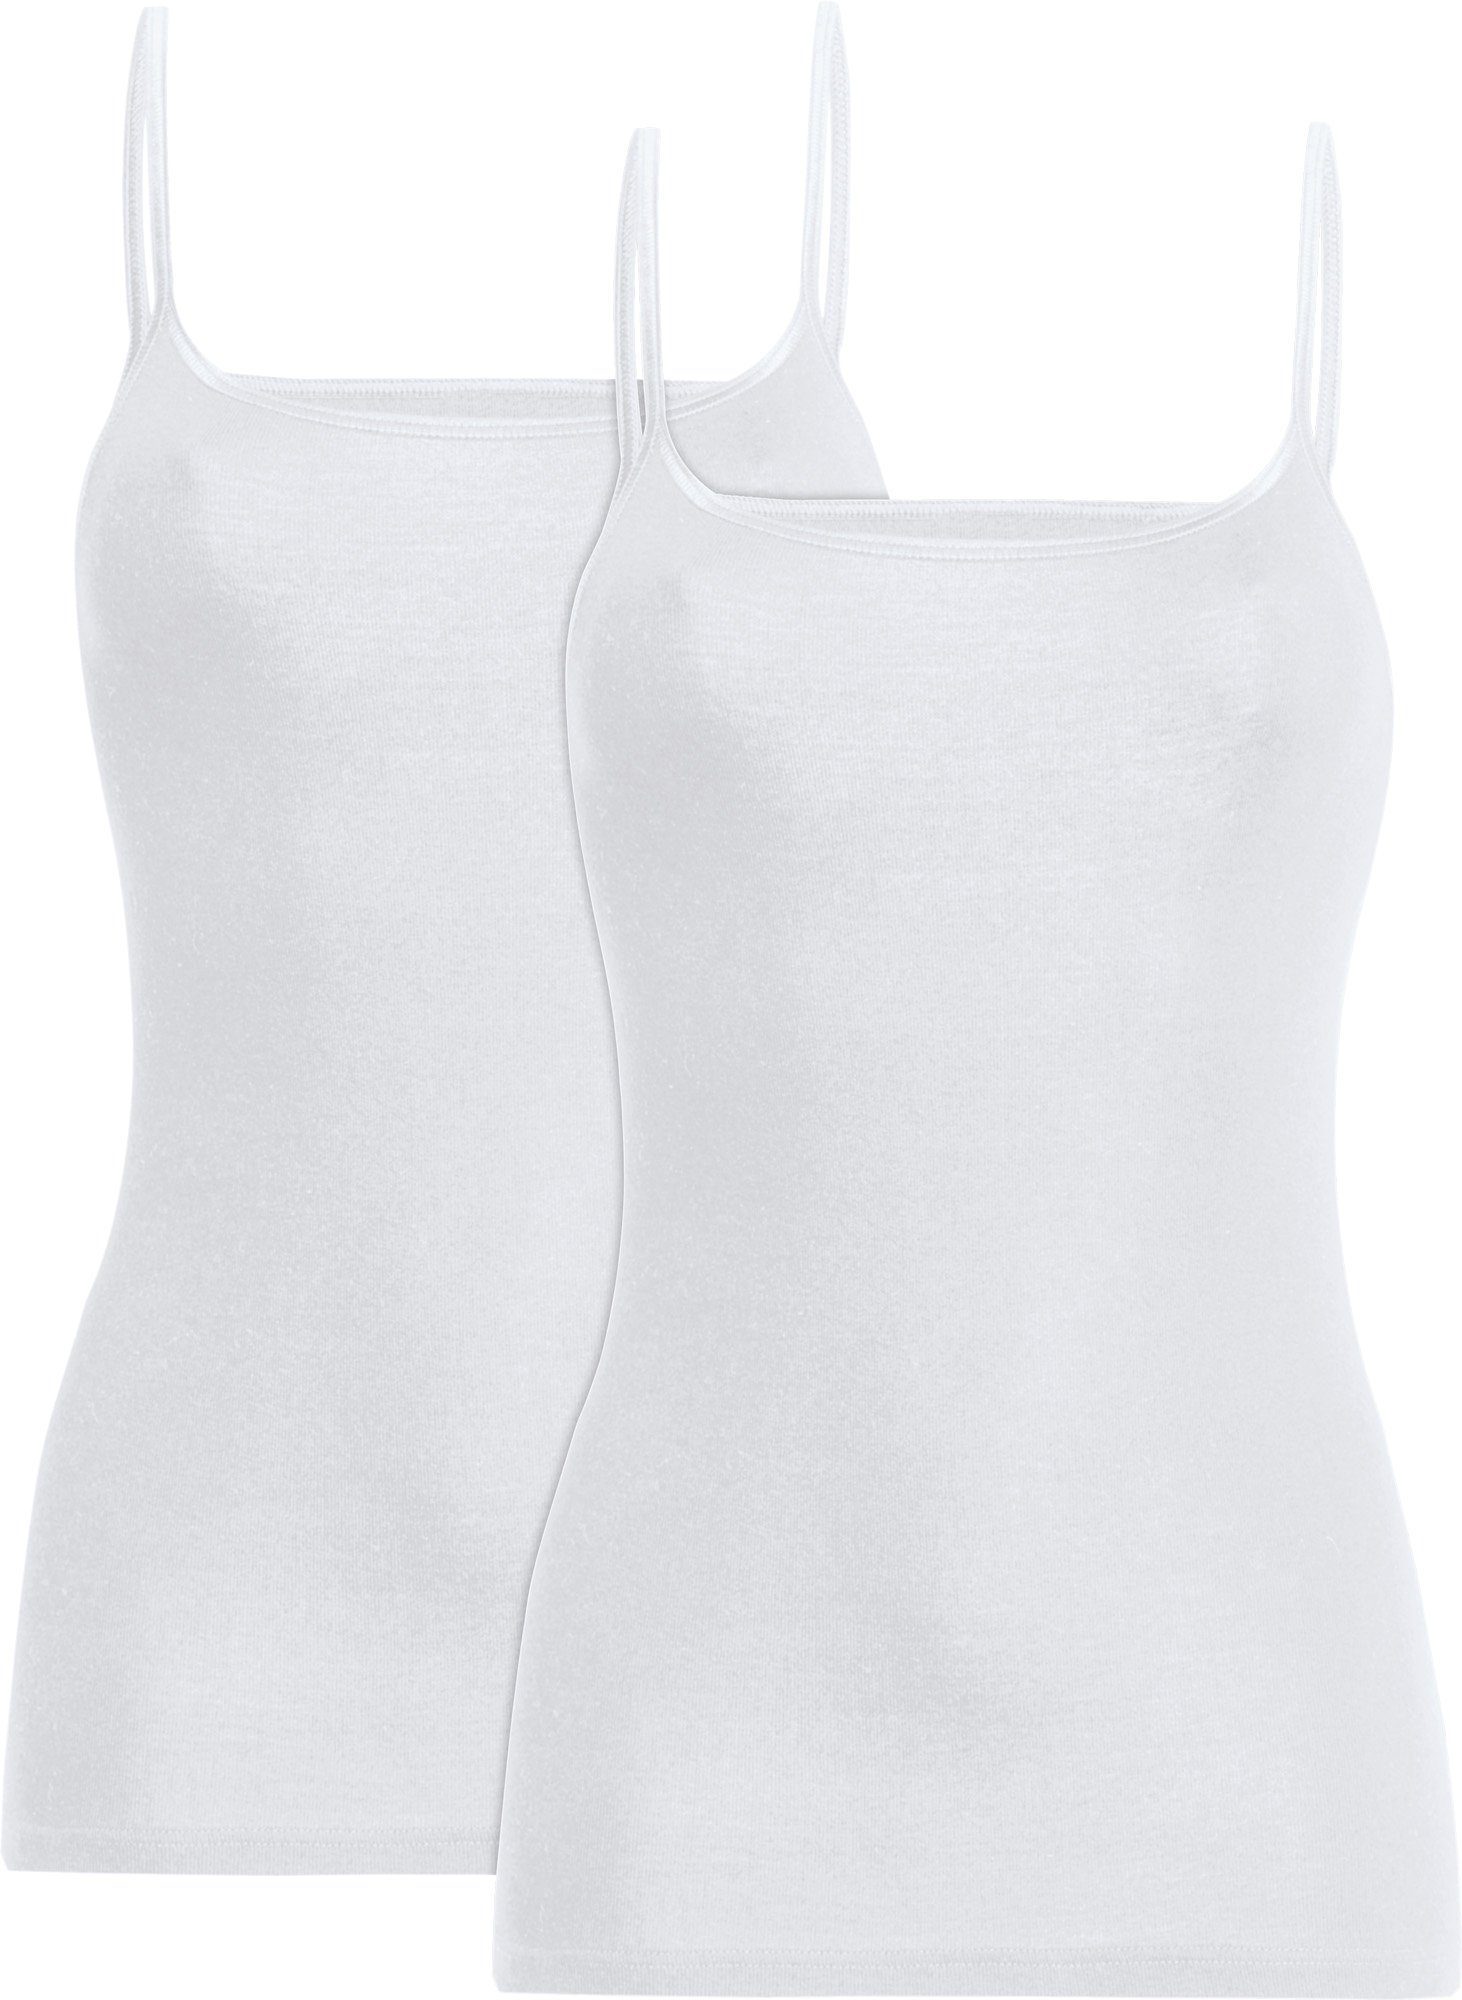 conta Unterhemd Damen-Unterhemd 2er-Pack Feinripp Uni weiß